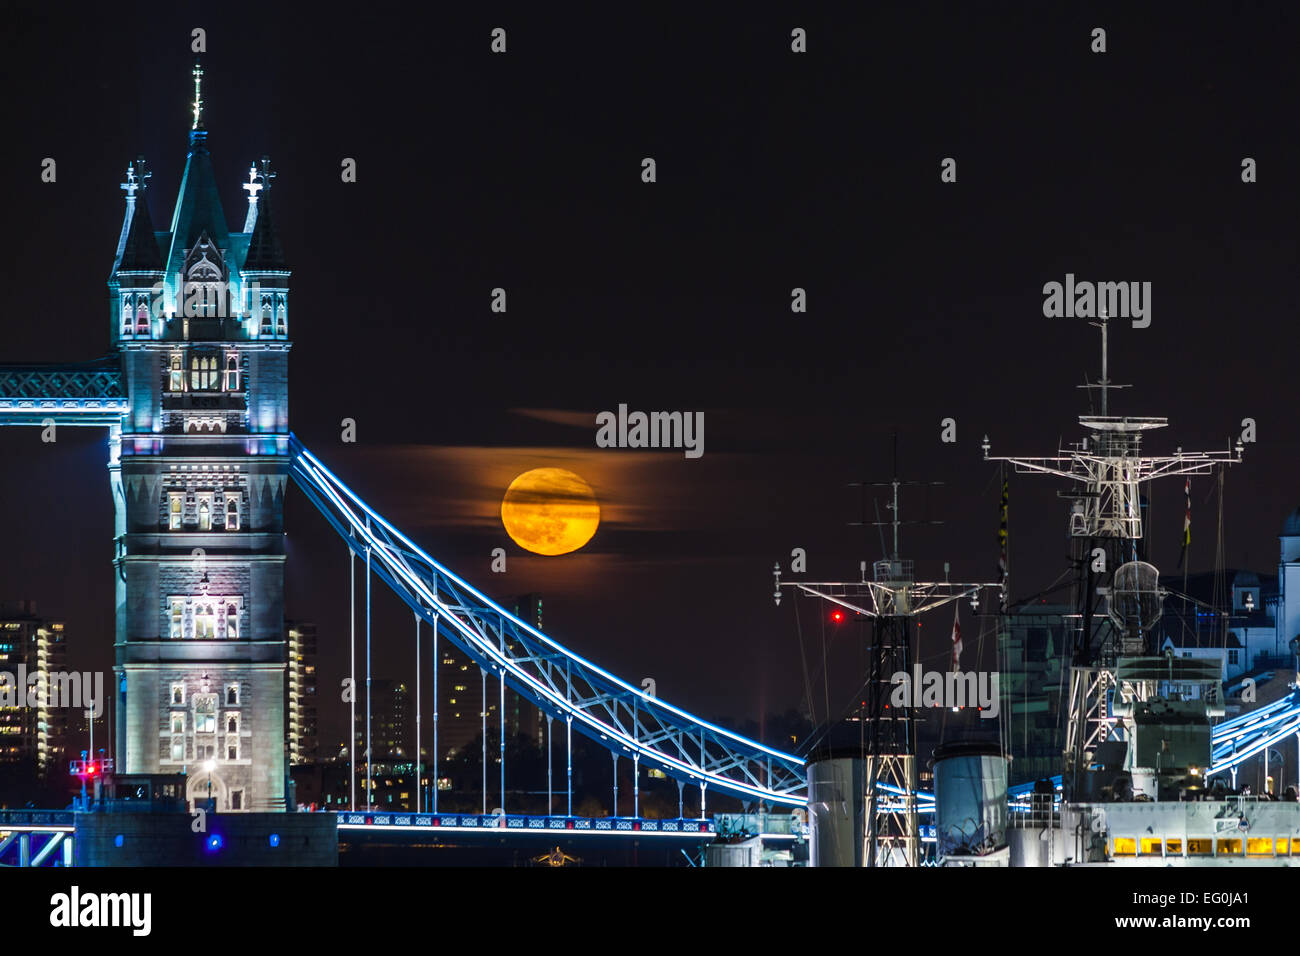 Großbritannien, London, beleuchtete Tower Bridge, Schiff am Fluss und voller gelber Mond im schwarzen Himmel Stockfoto